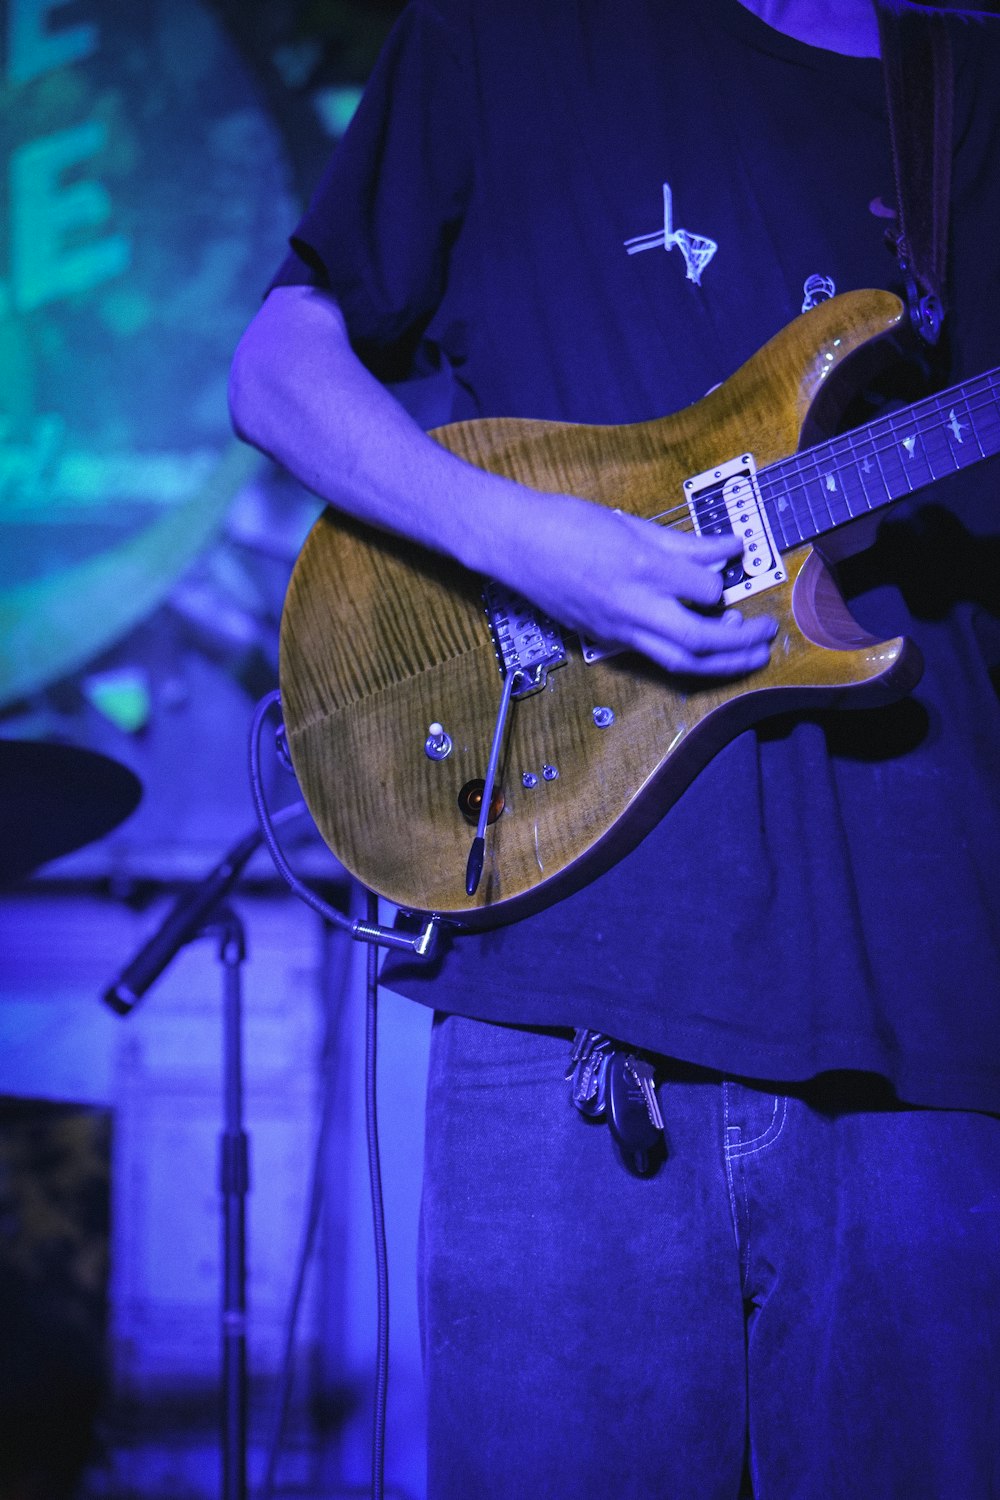 Un uomo sta suonando una chitarra sul palco